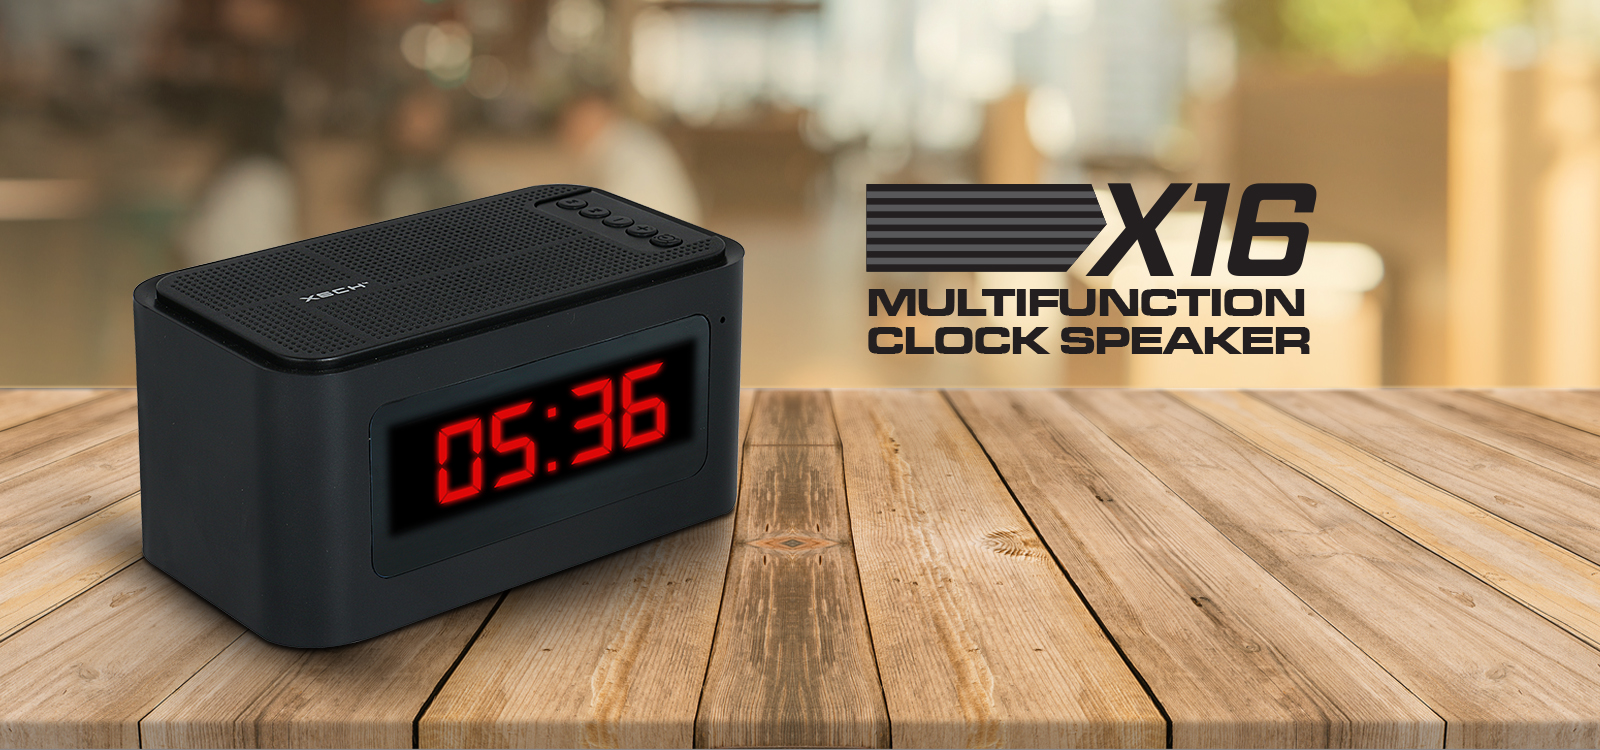 XECH X16 MULTIFUNCTIONAL CLOCK SPEAKER